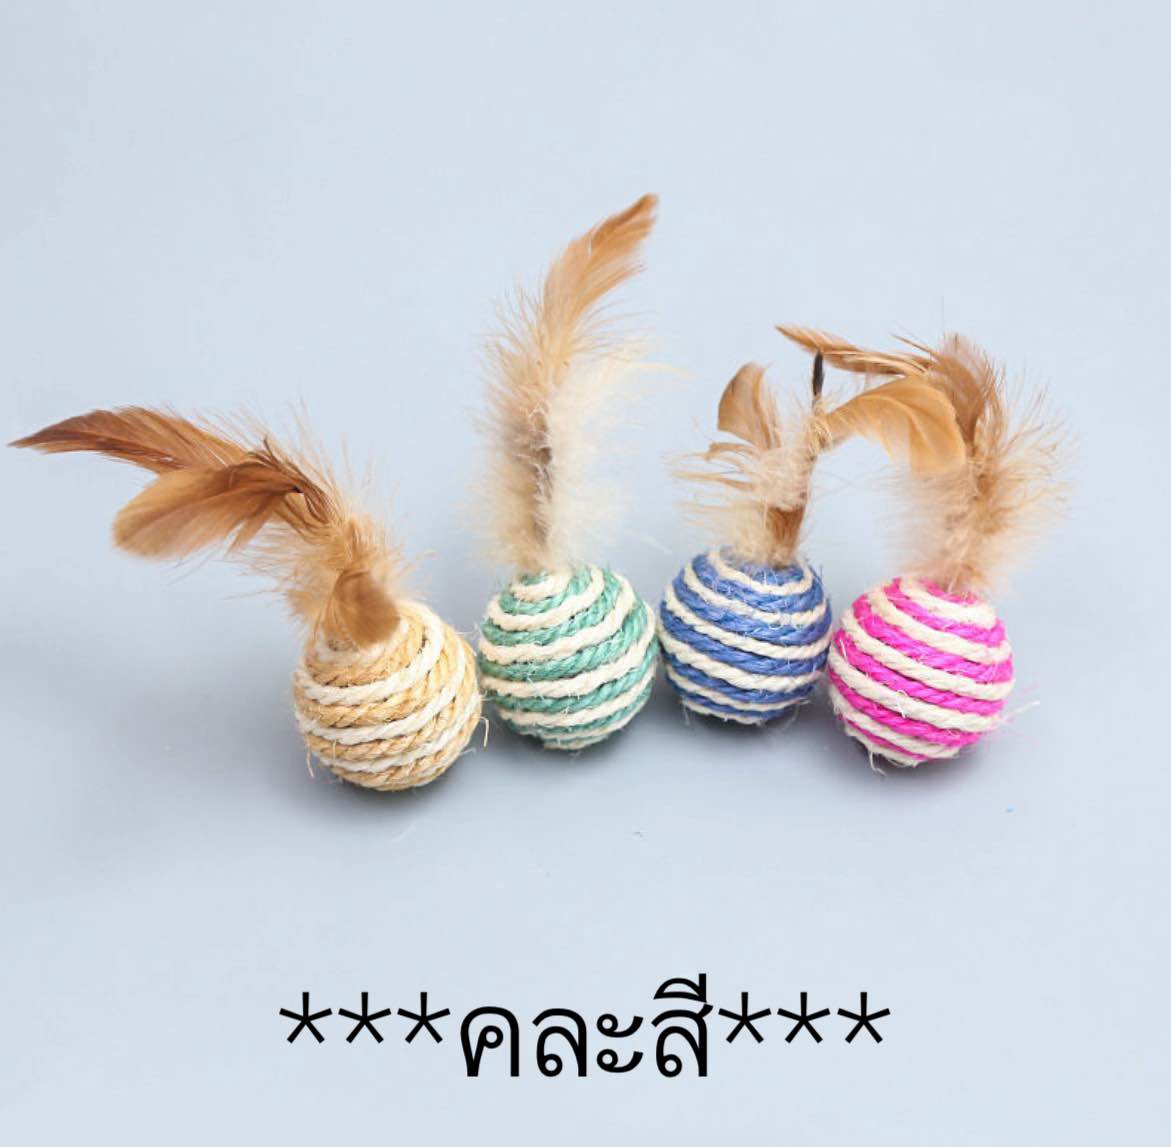 PE-340 ลูกบอลเชือก ขนนก ของเล่นแมว บอลแมว สไตล์ญี่ปุ่น ผลิตจากวัสดุธรรมชาติ 4.5 cm.  ราคาถูก พร้อมส่ง